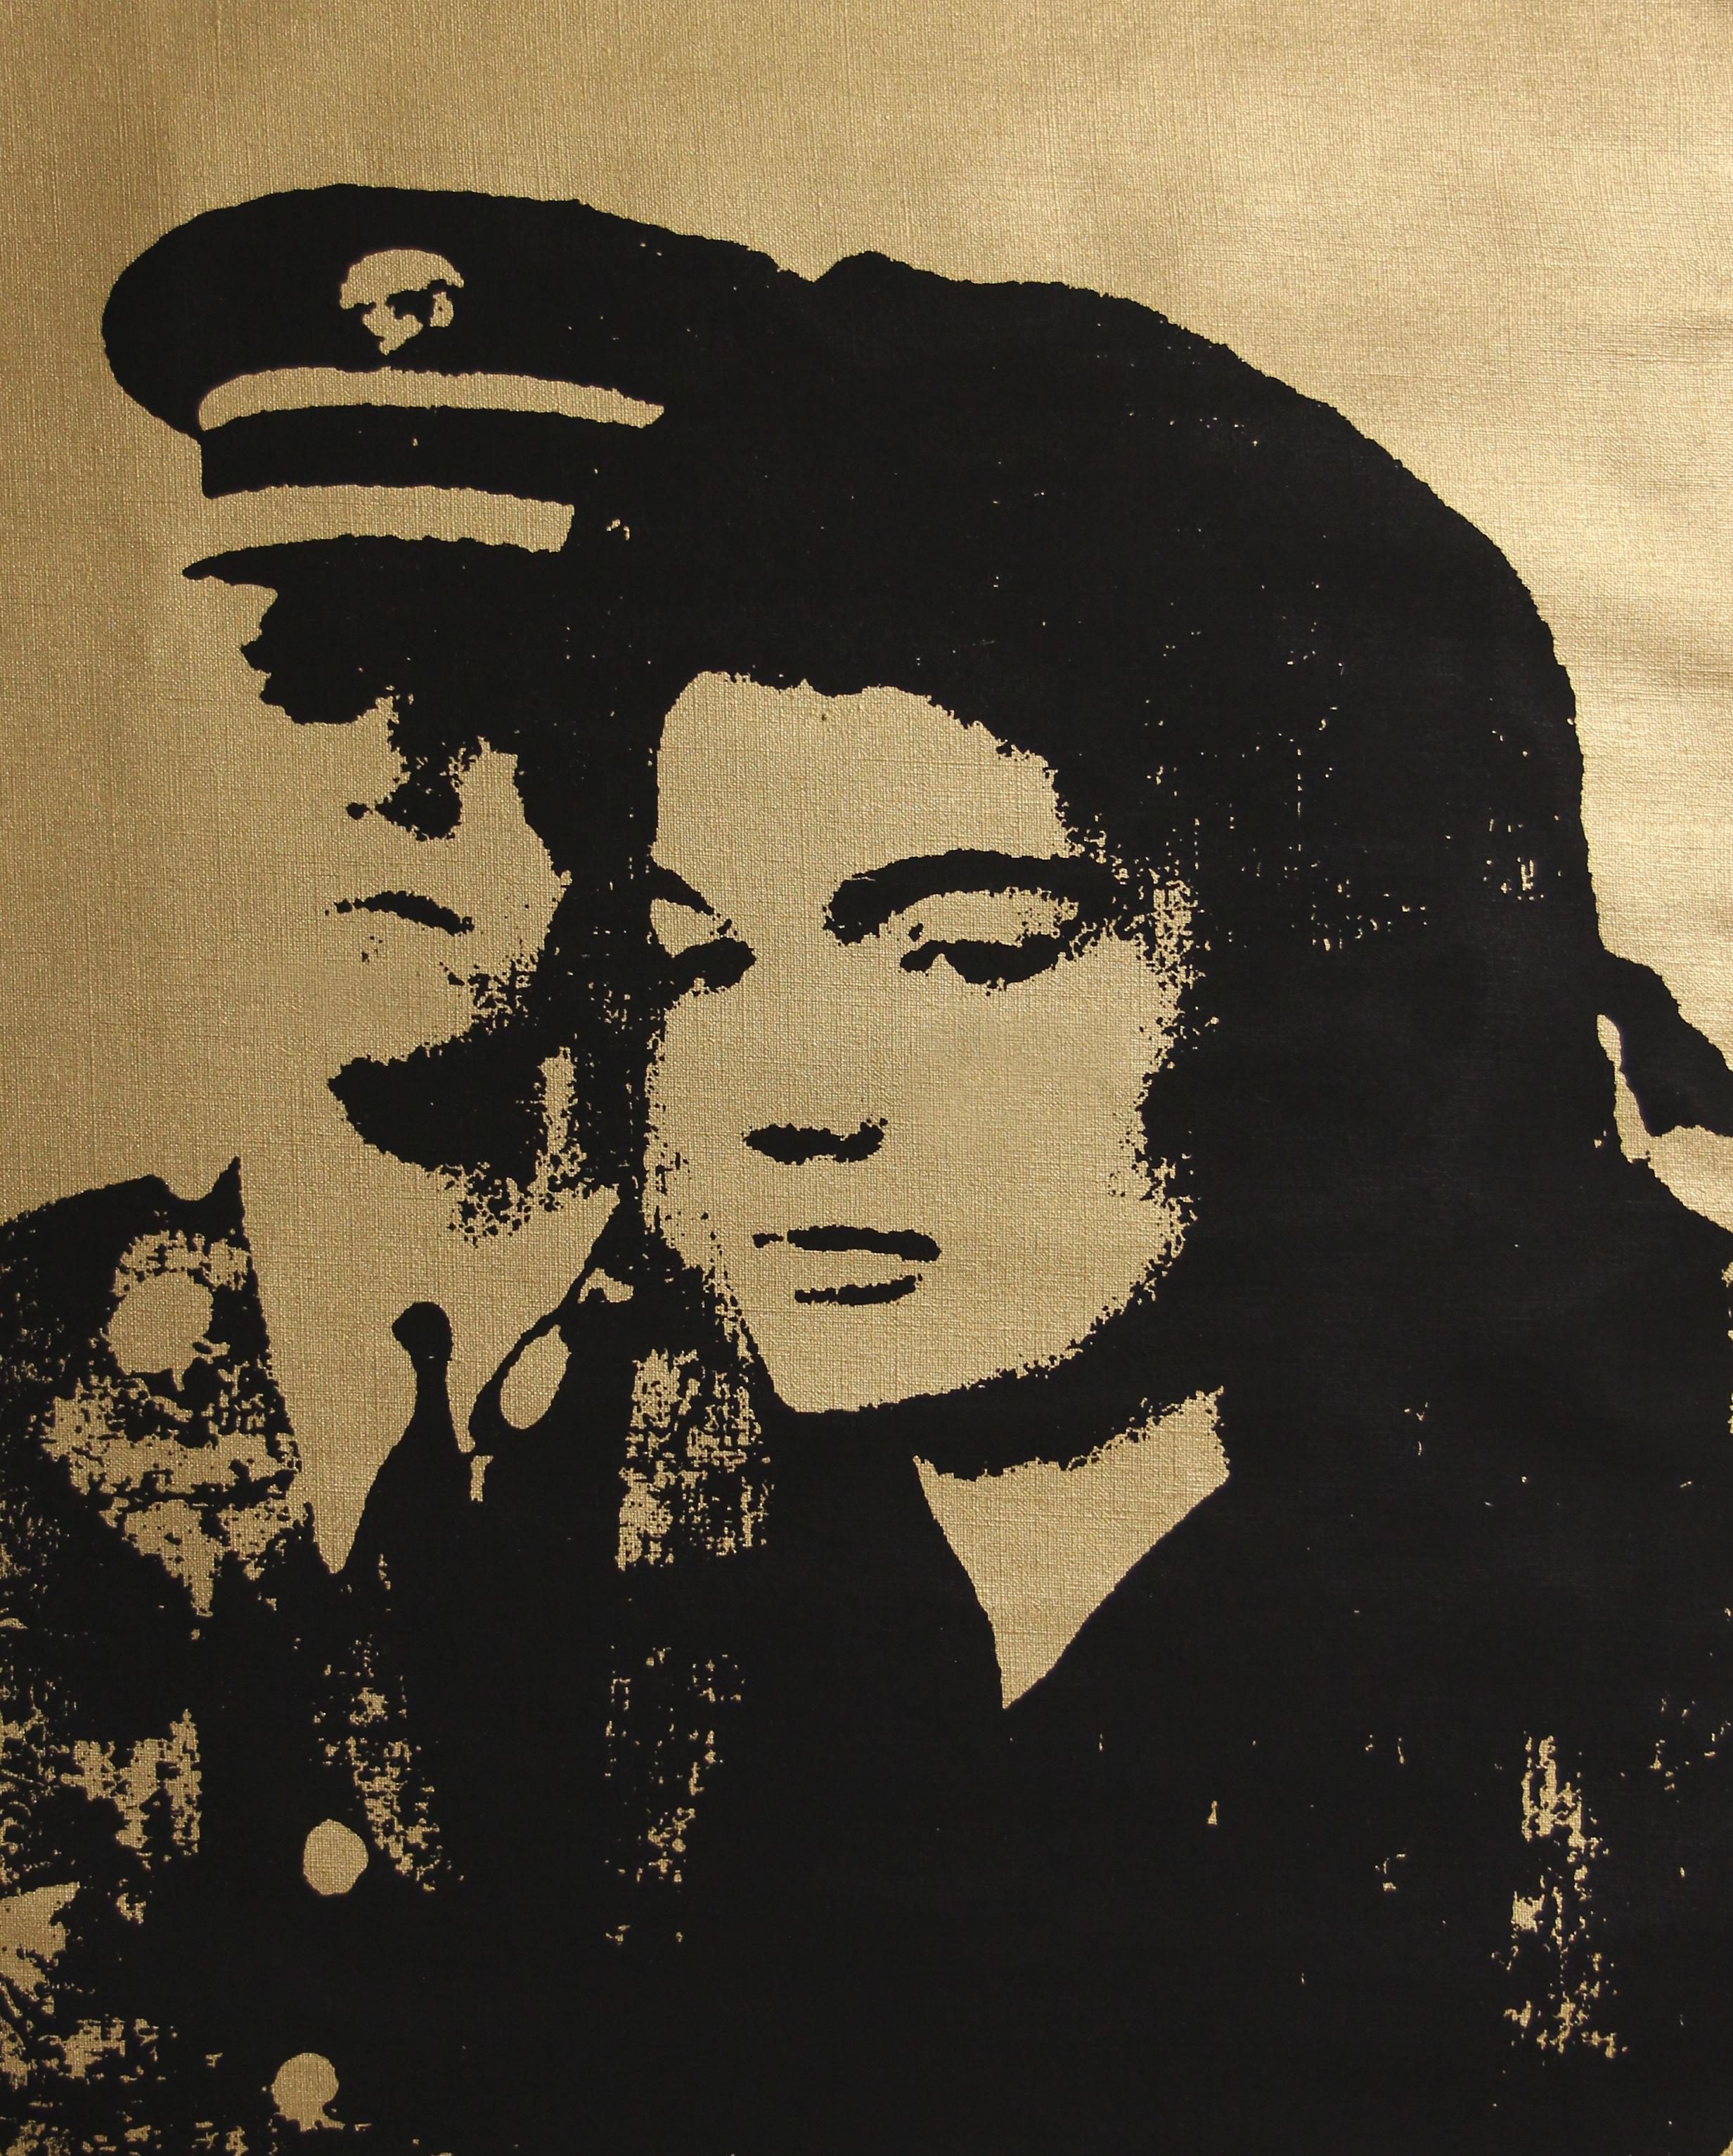 Denied Andy Warhol Jackie Schwarz-Gold-Gemälde von Charles Lutz